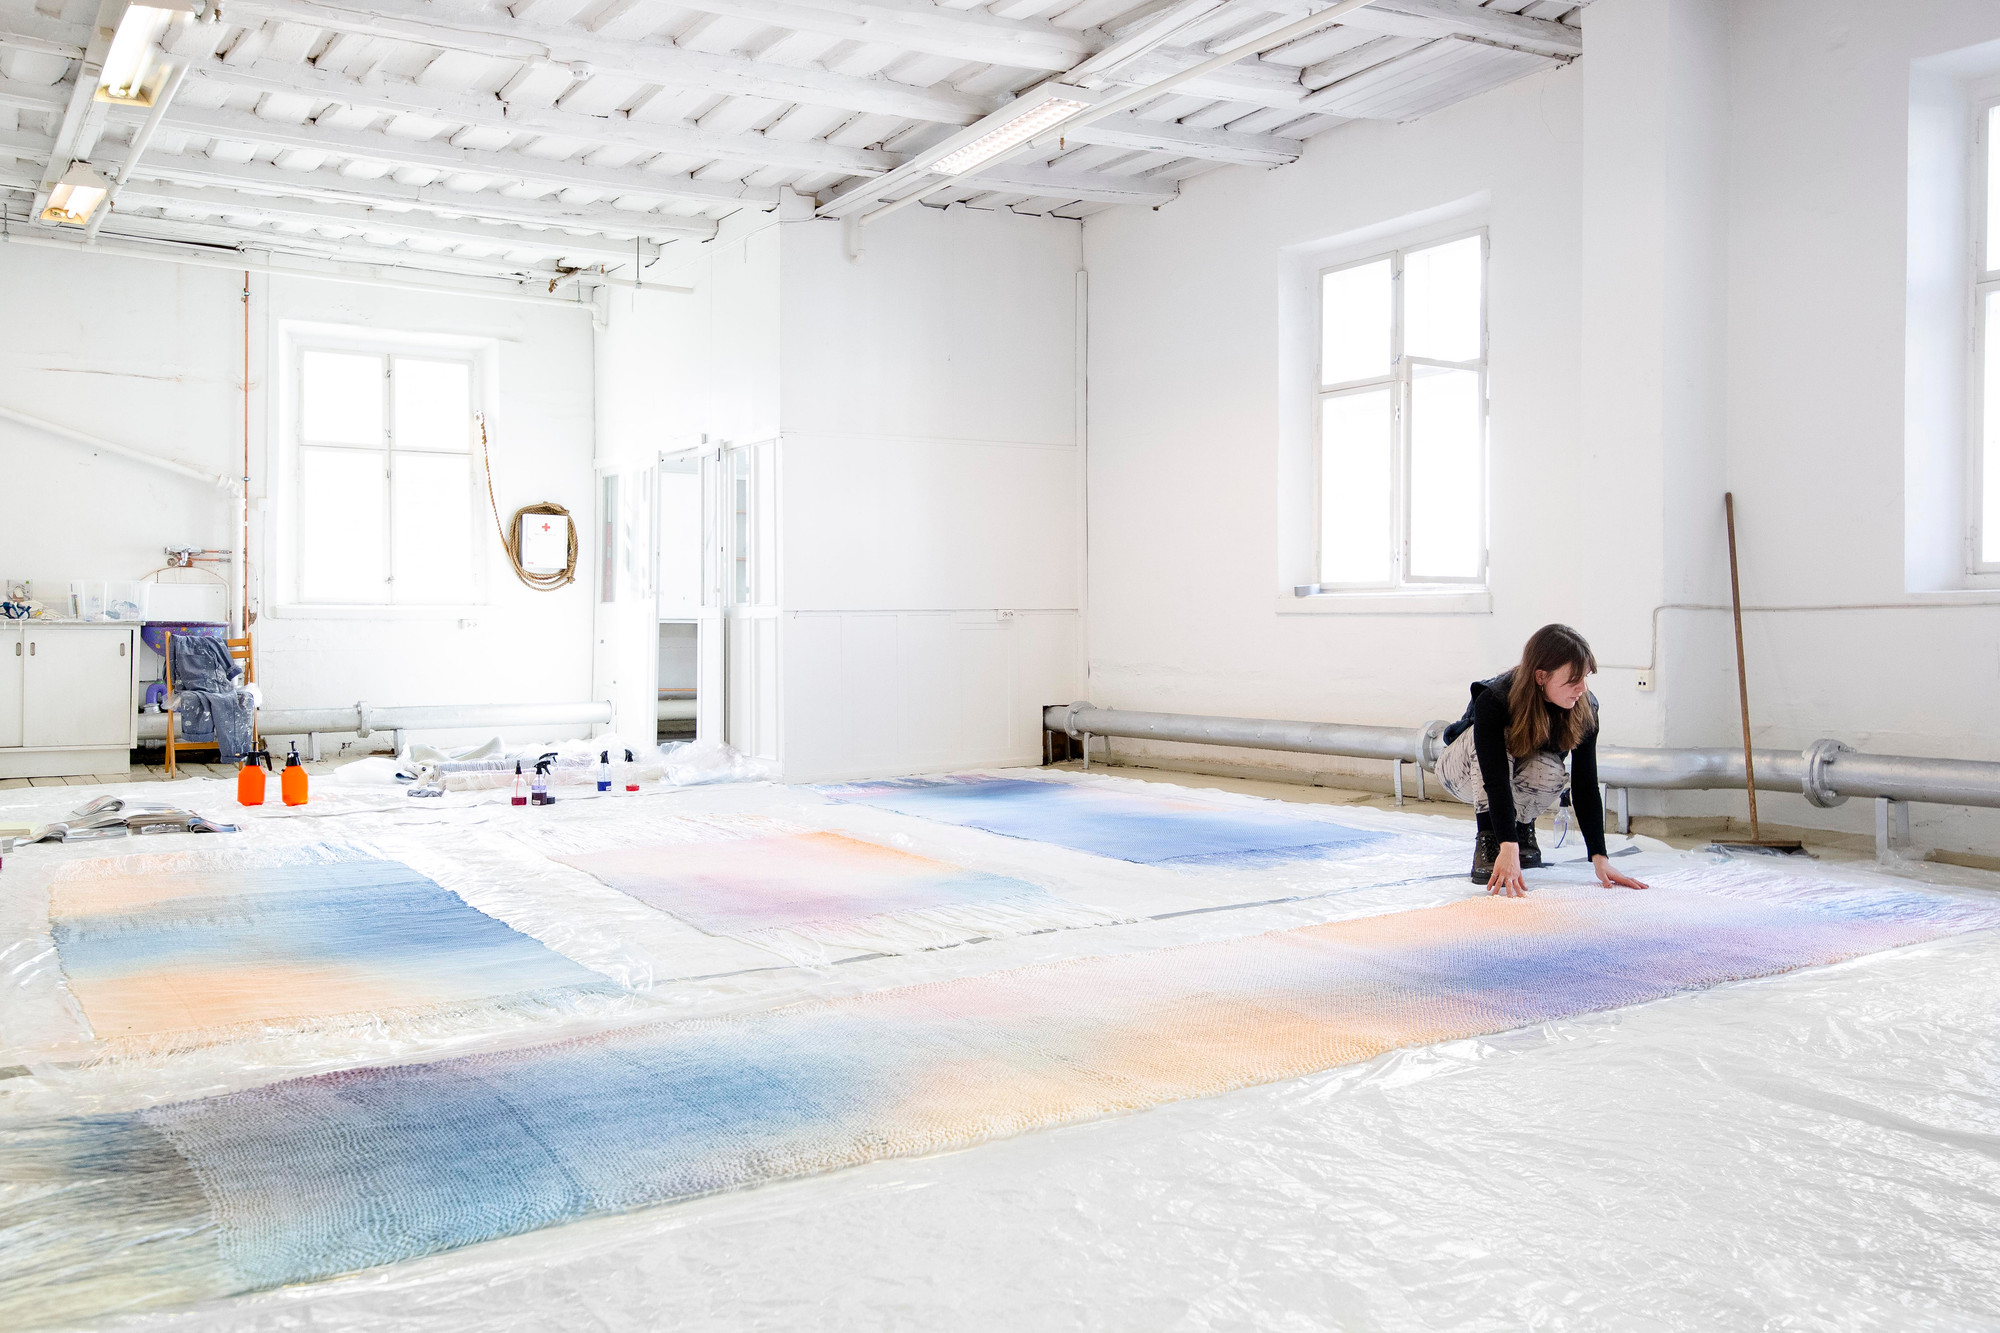 Aurora Passero i atelieret, med tekstiler i blått, lilla og gult spredt ut over gulvet.